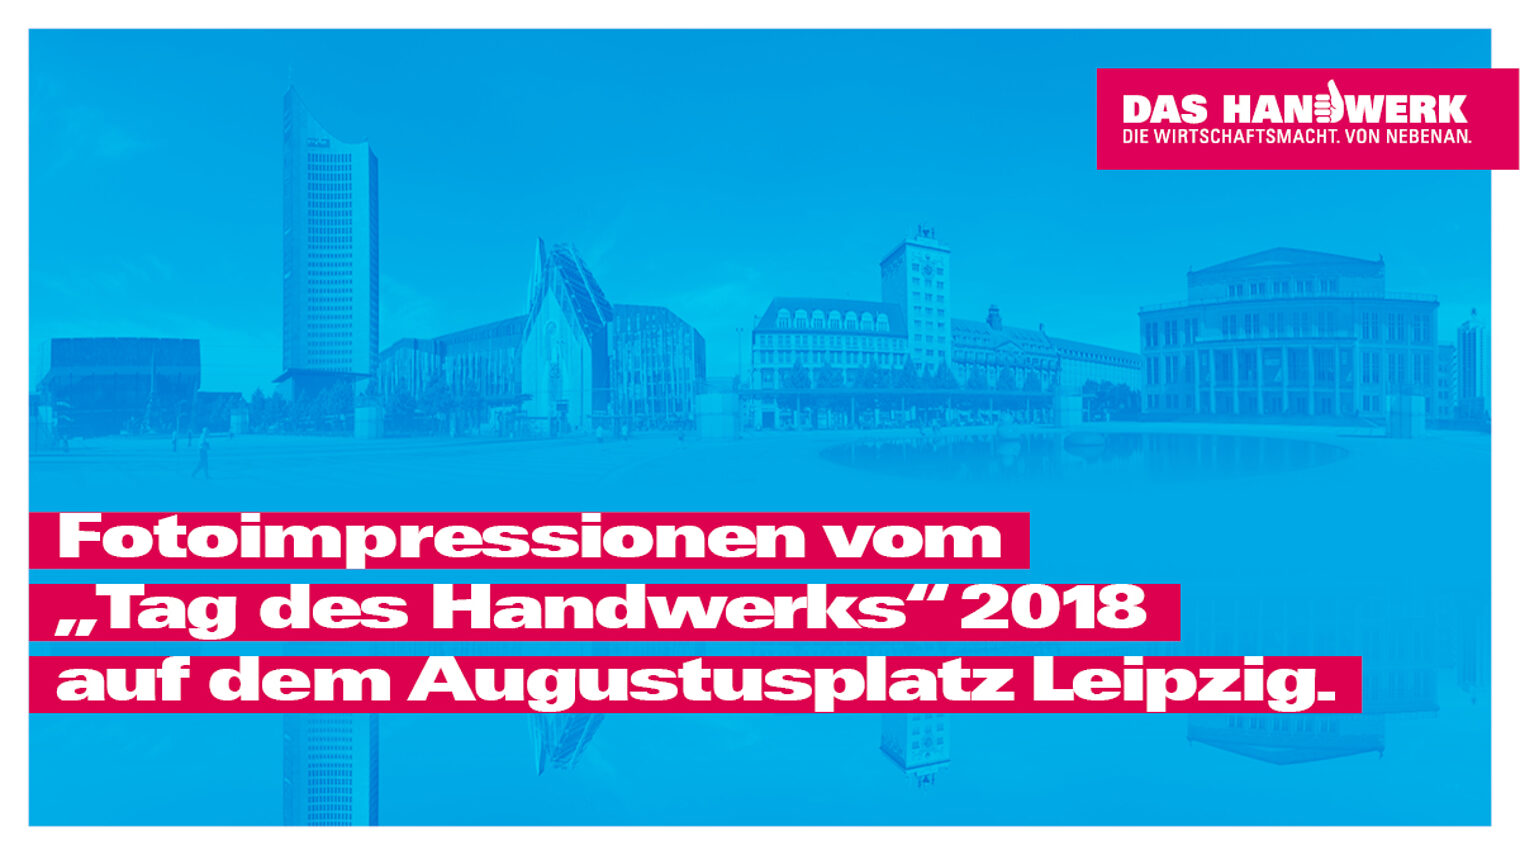 "Tag des Handwerks" 2018 auf dem Leipziger Augustusplatz. 1